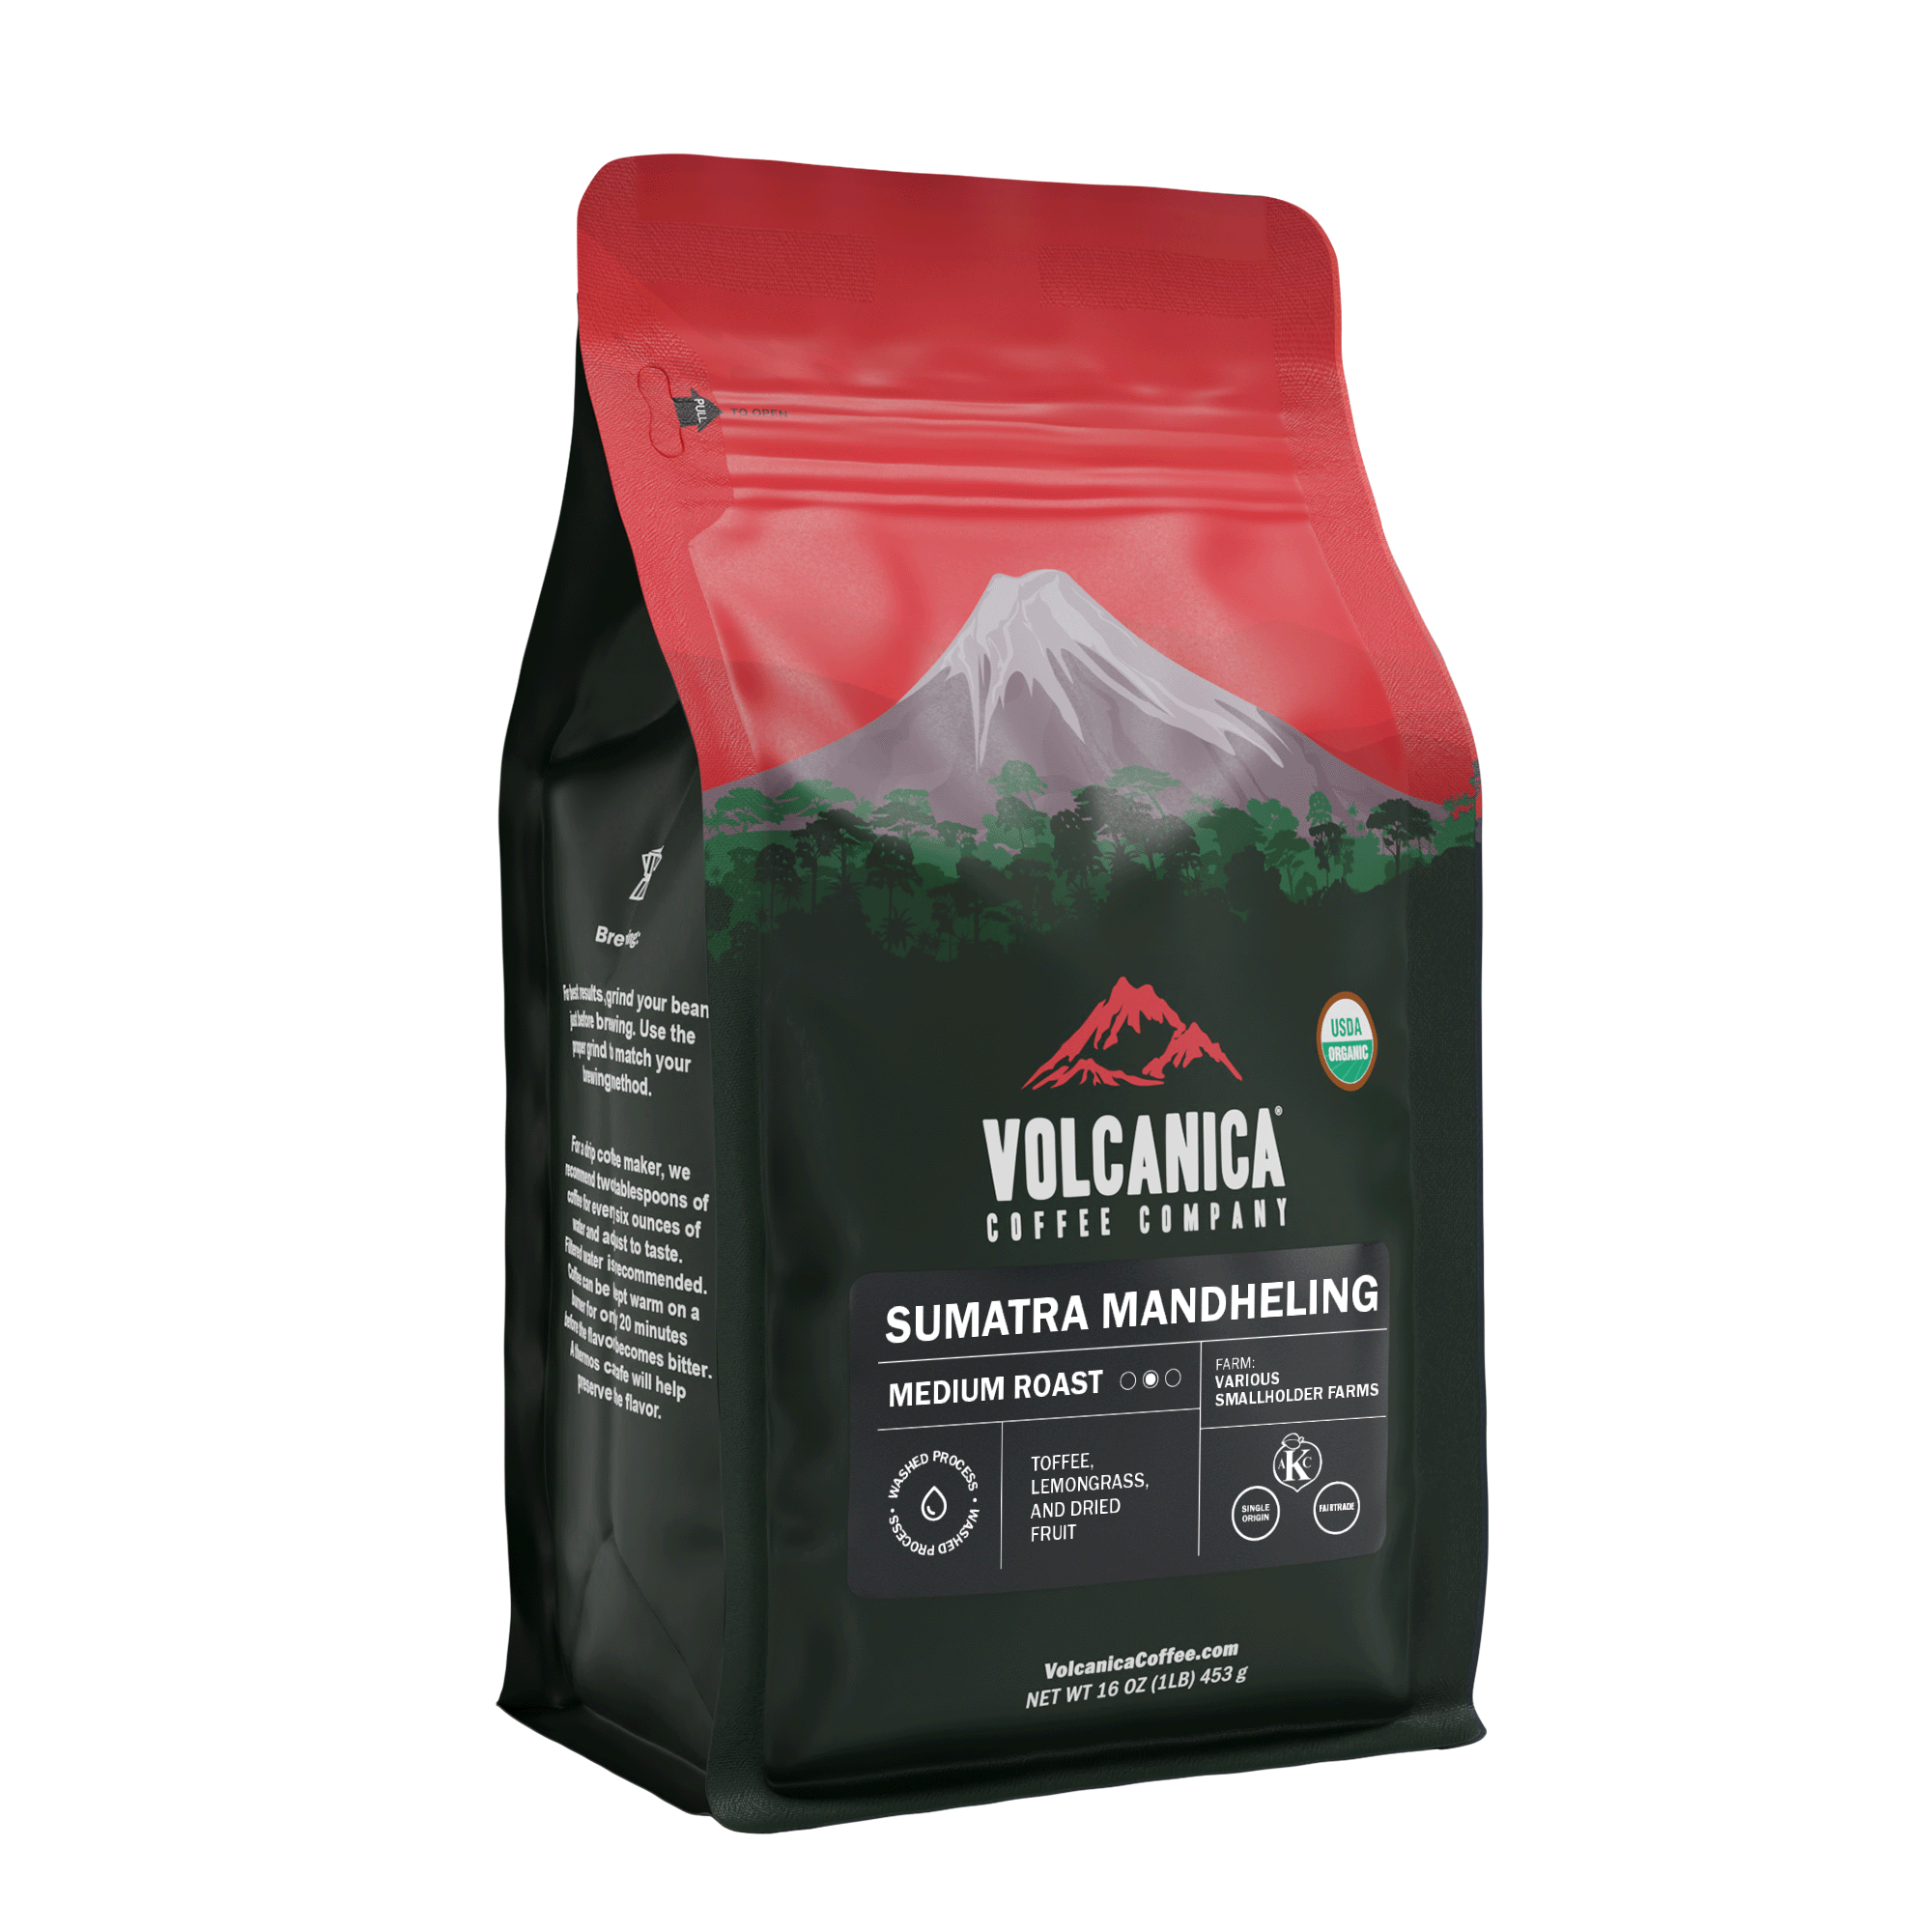 Sumatra Mandheling Coffee - USDA Organic